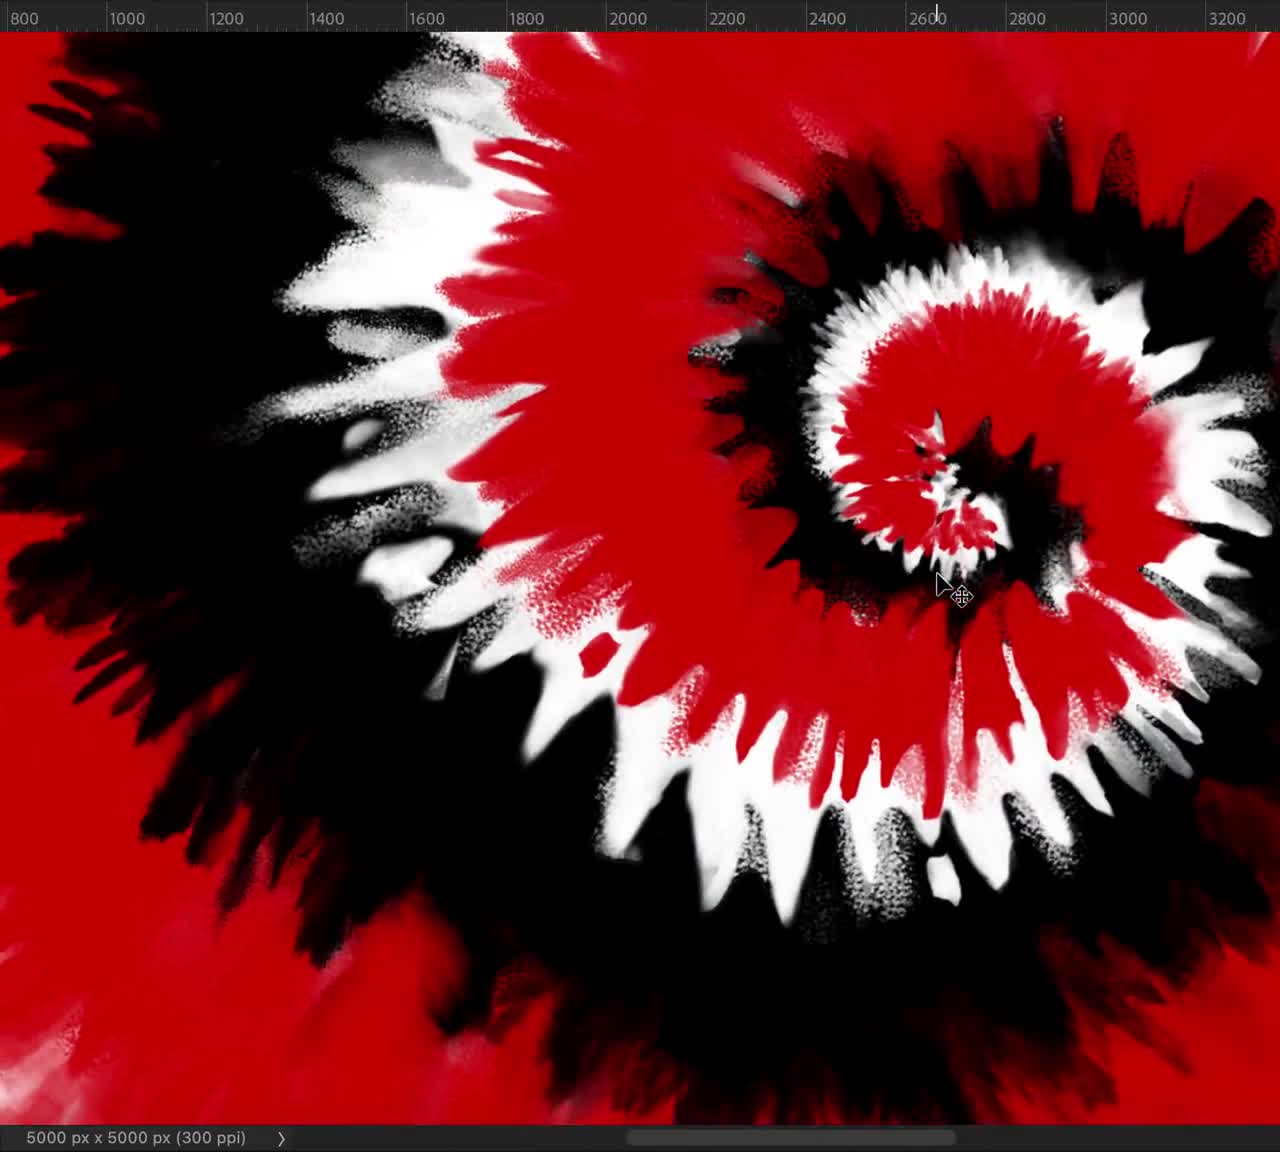 Tie Dye Designs: 3 Red and Black Spirals 